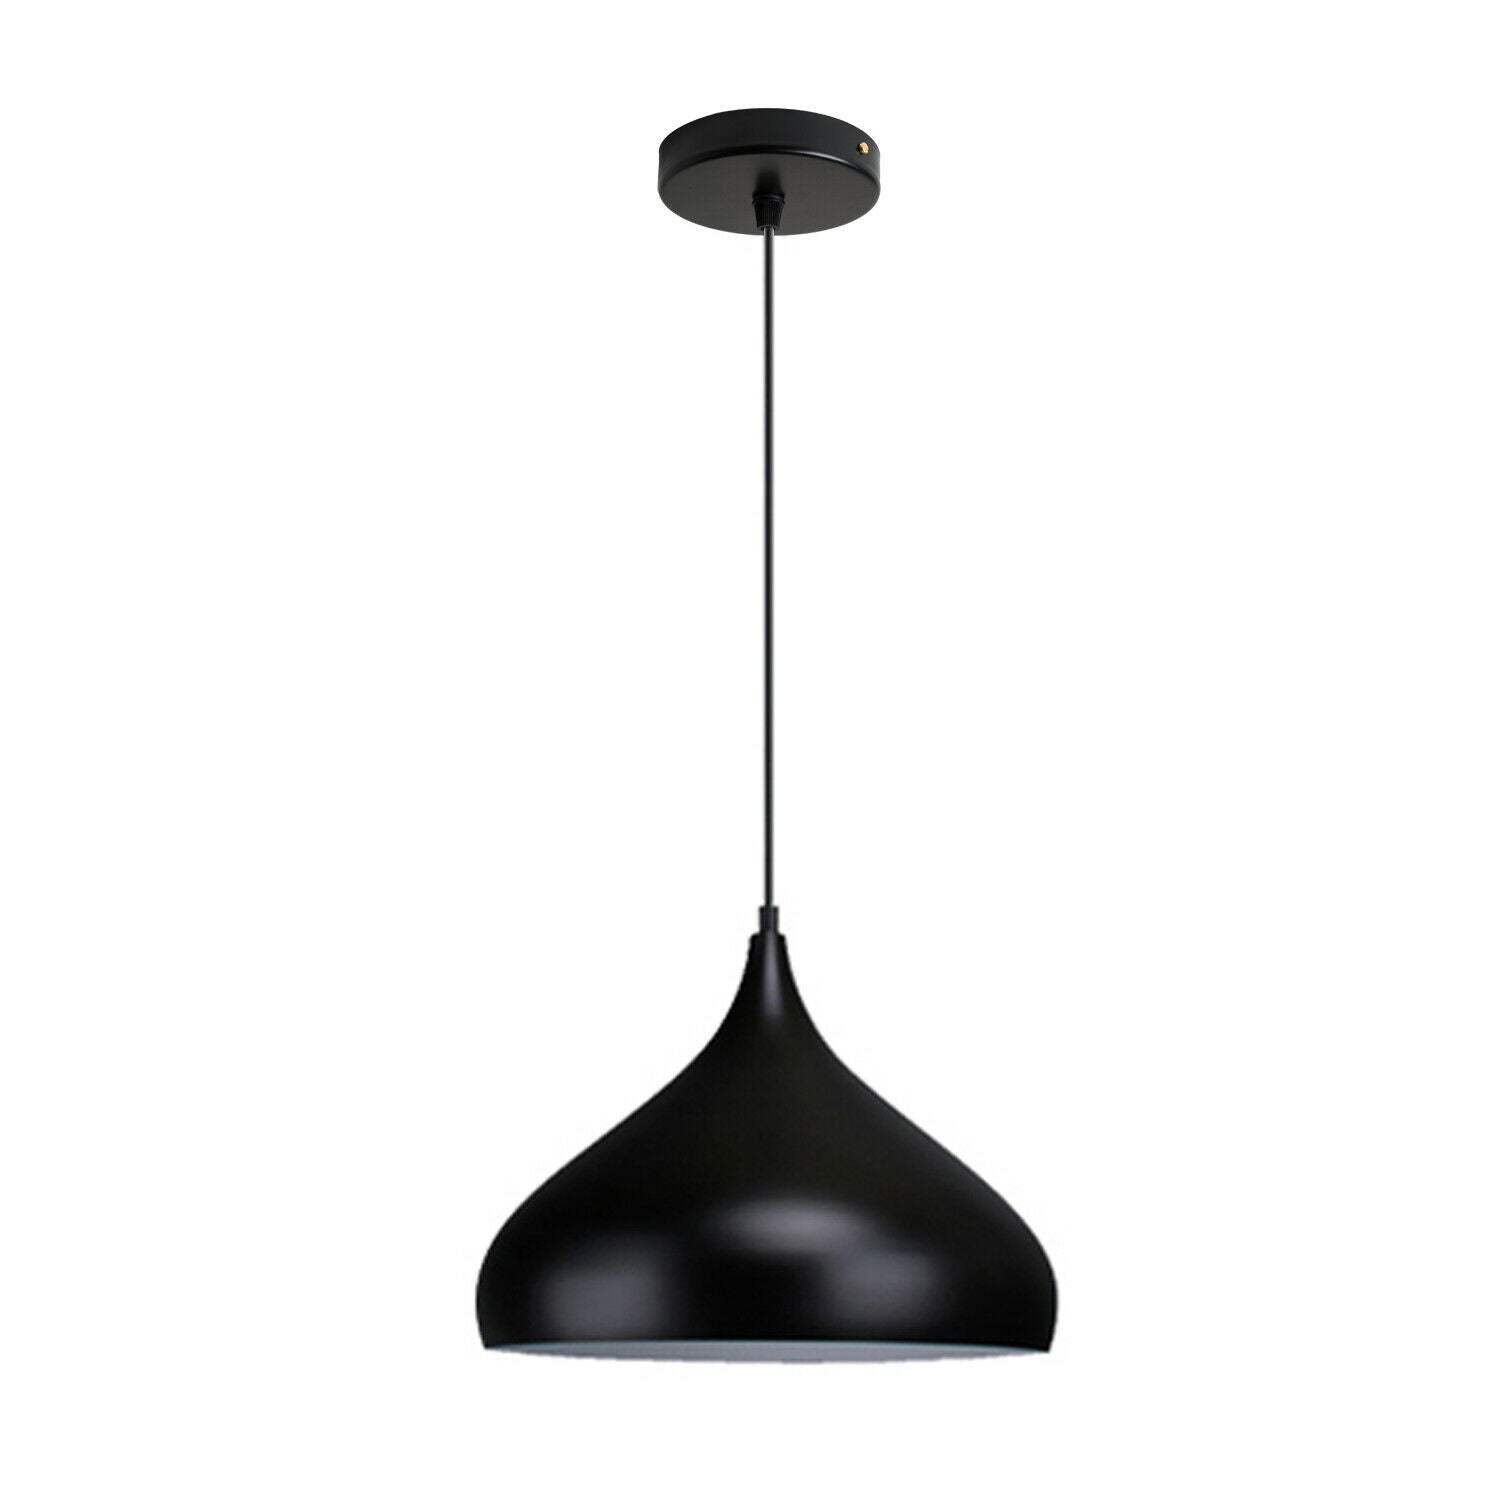 Vintage Industrial Metal Ceiling Black Hanging Pendant Shade~2506 - LEDSone UK Ltd